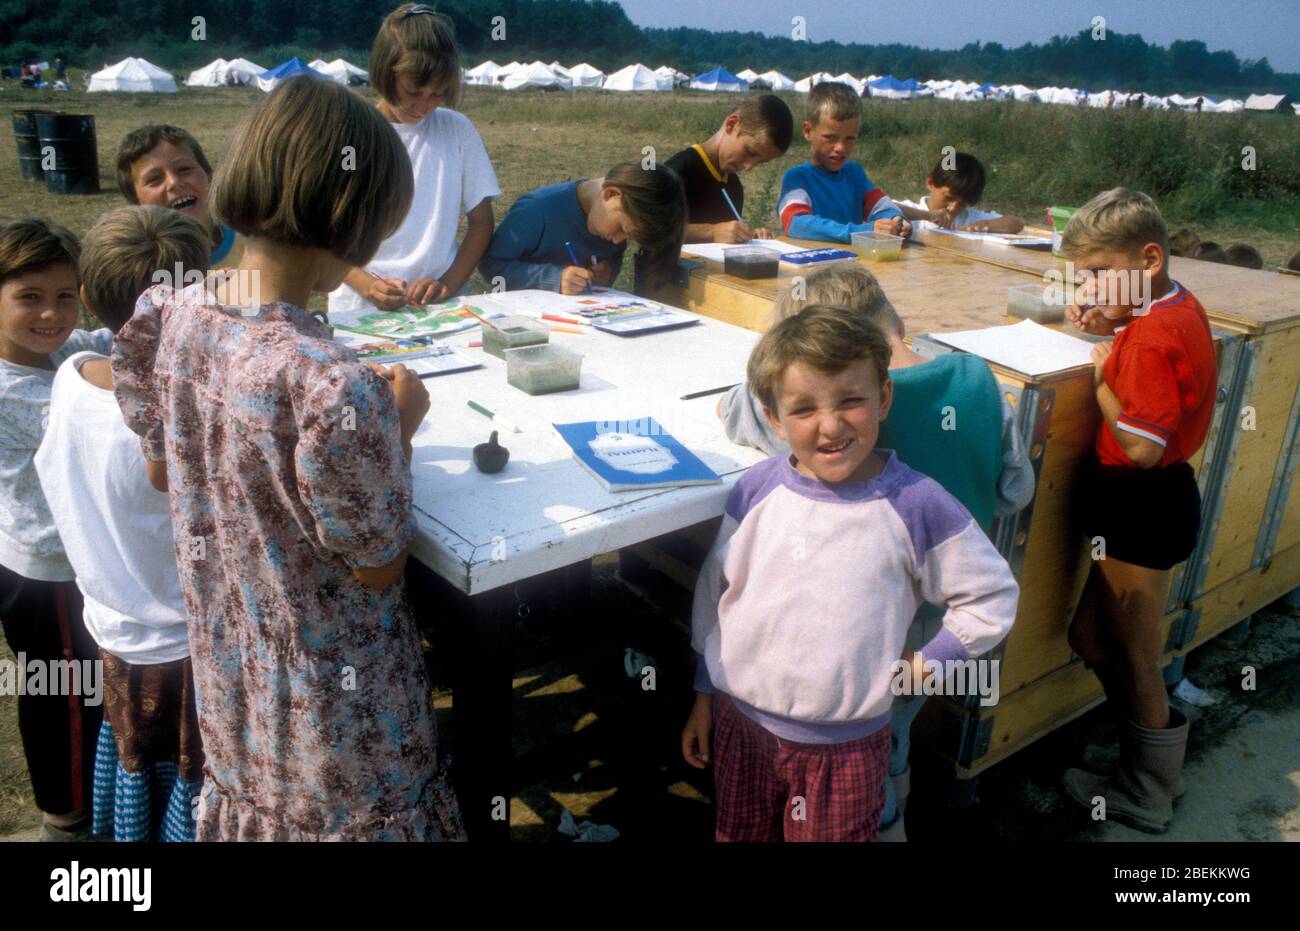 1995 Tuzla - Flugplatz Tuzla temporäres UN-Flüchtlingslager für bosnische Muslime, die vor dem Massaker von Srebrenica während des Bosnienkrieges fliehen. Temporäre Schule für Kinder Flüchtlinge eingerichtet. Stockfoto